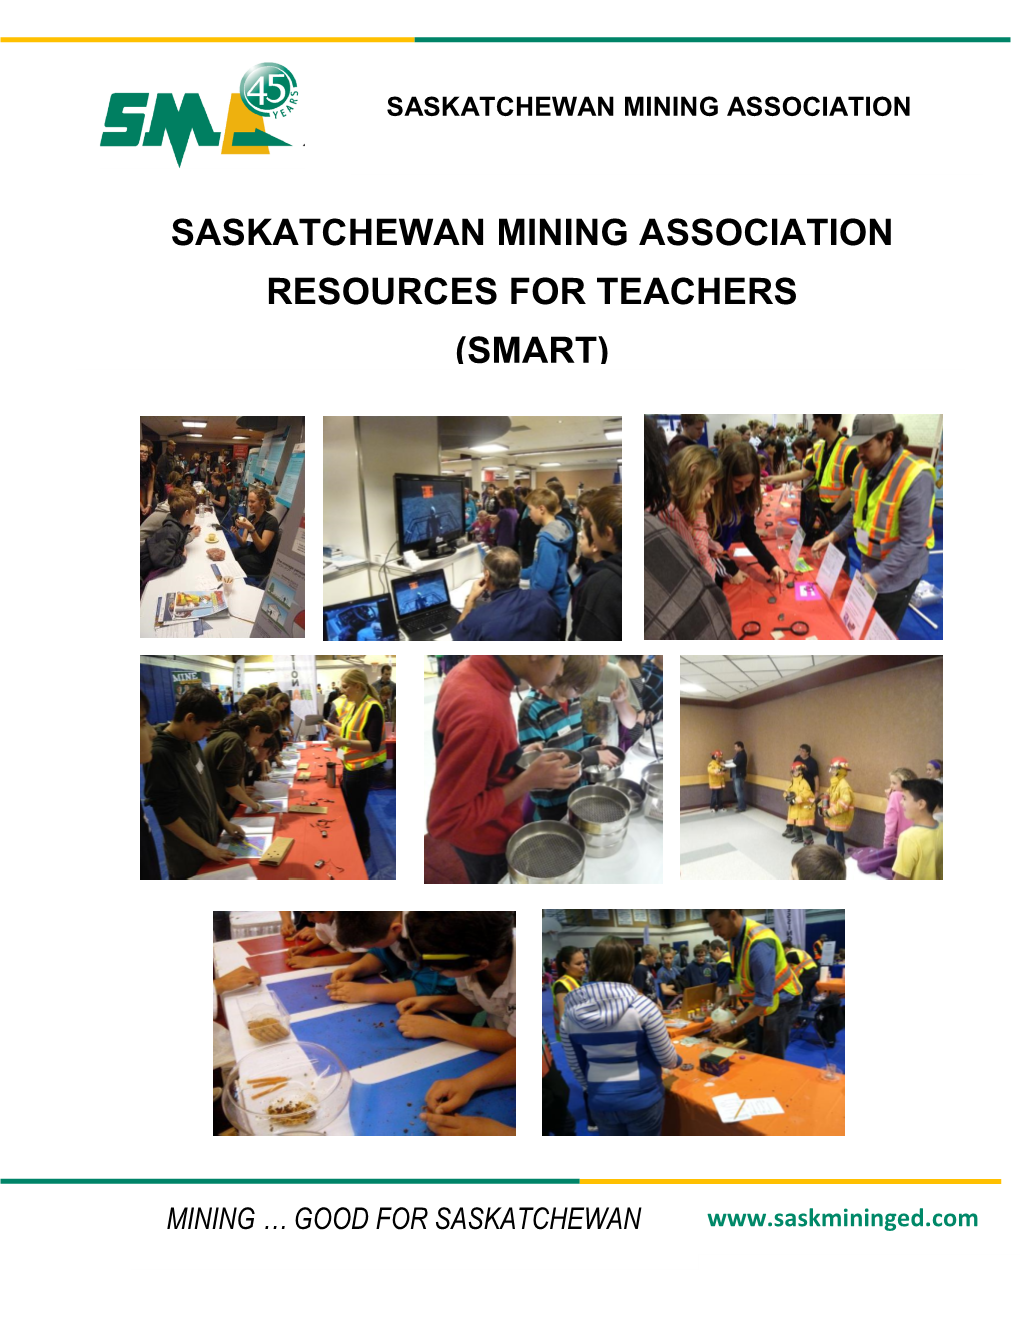 Saskatchewan Mining Association Resources for Teachers (Smart)